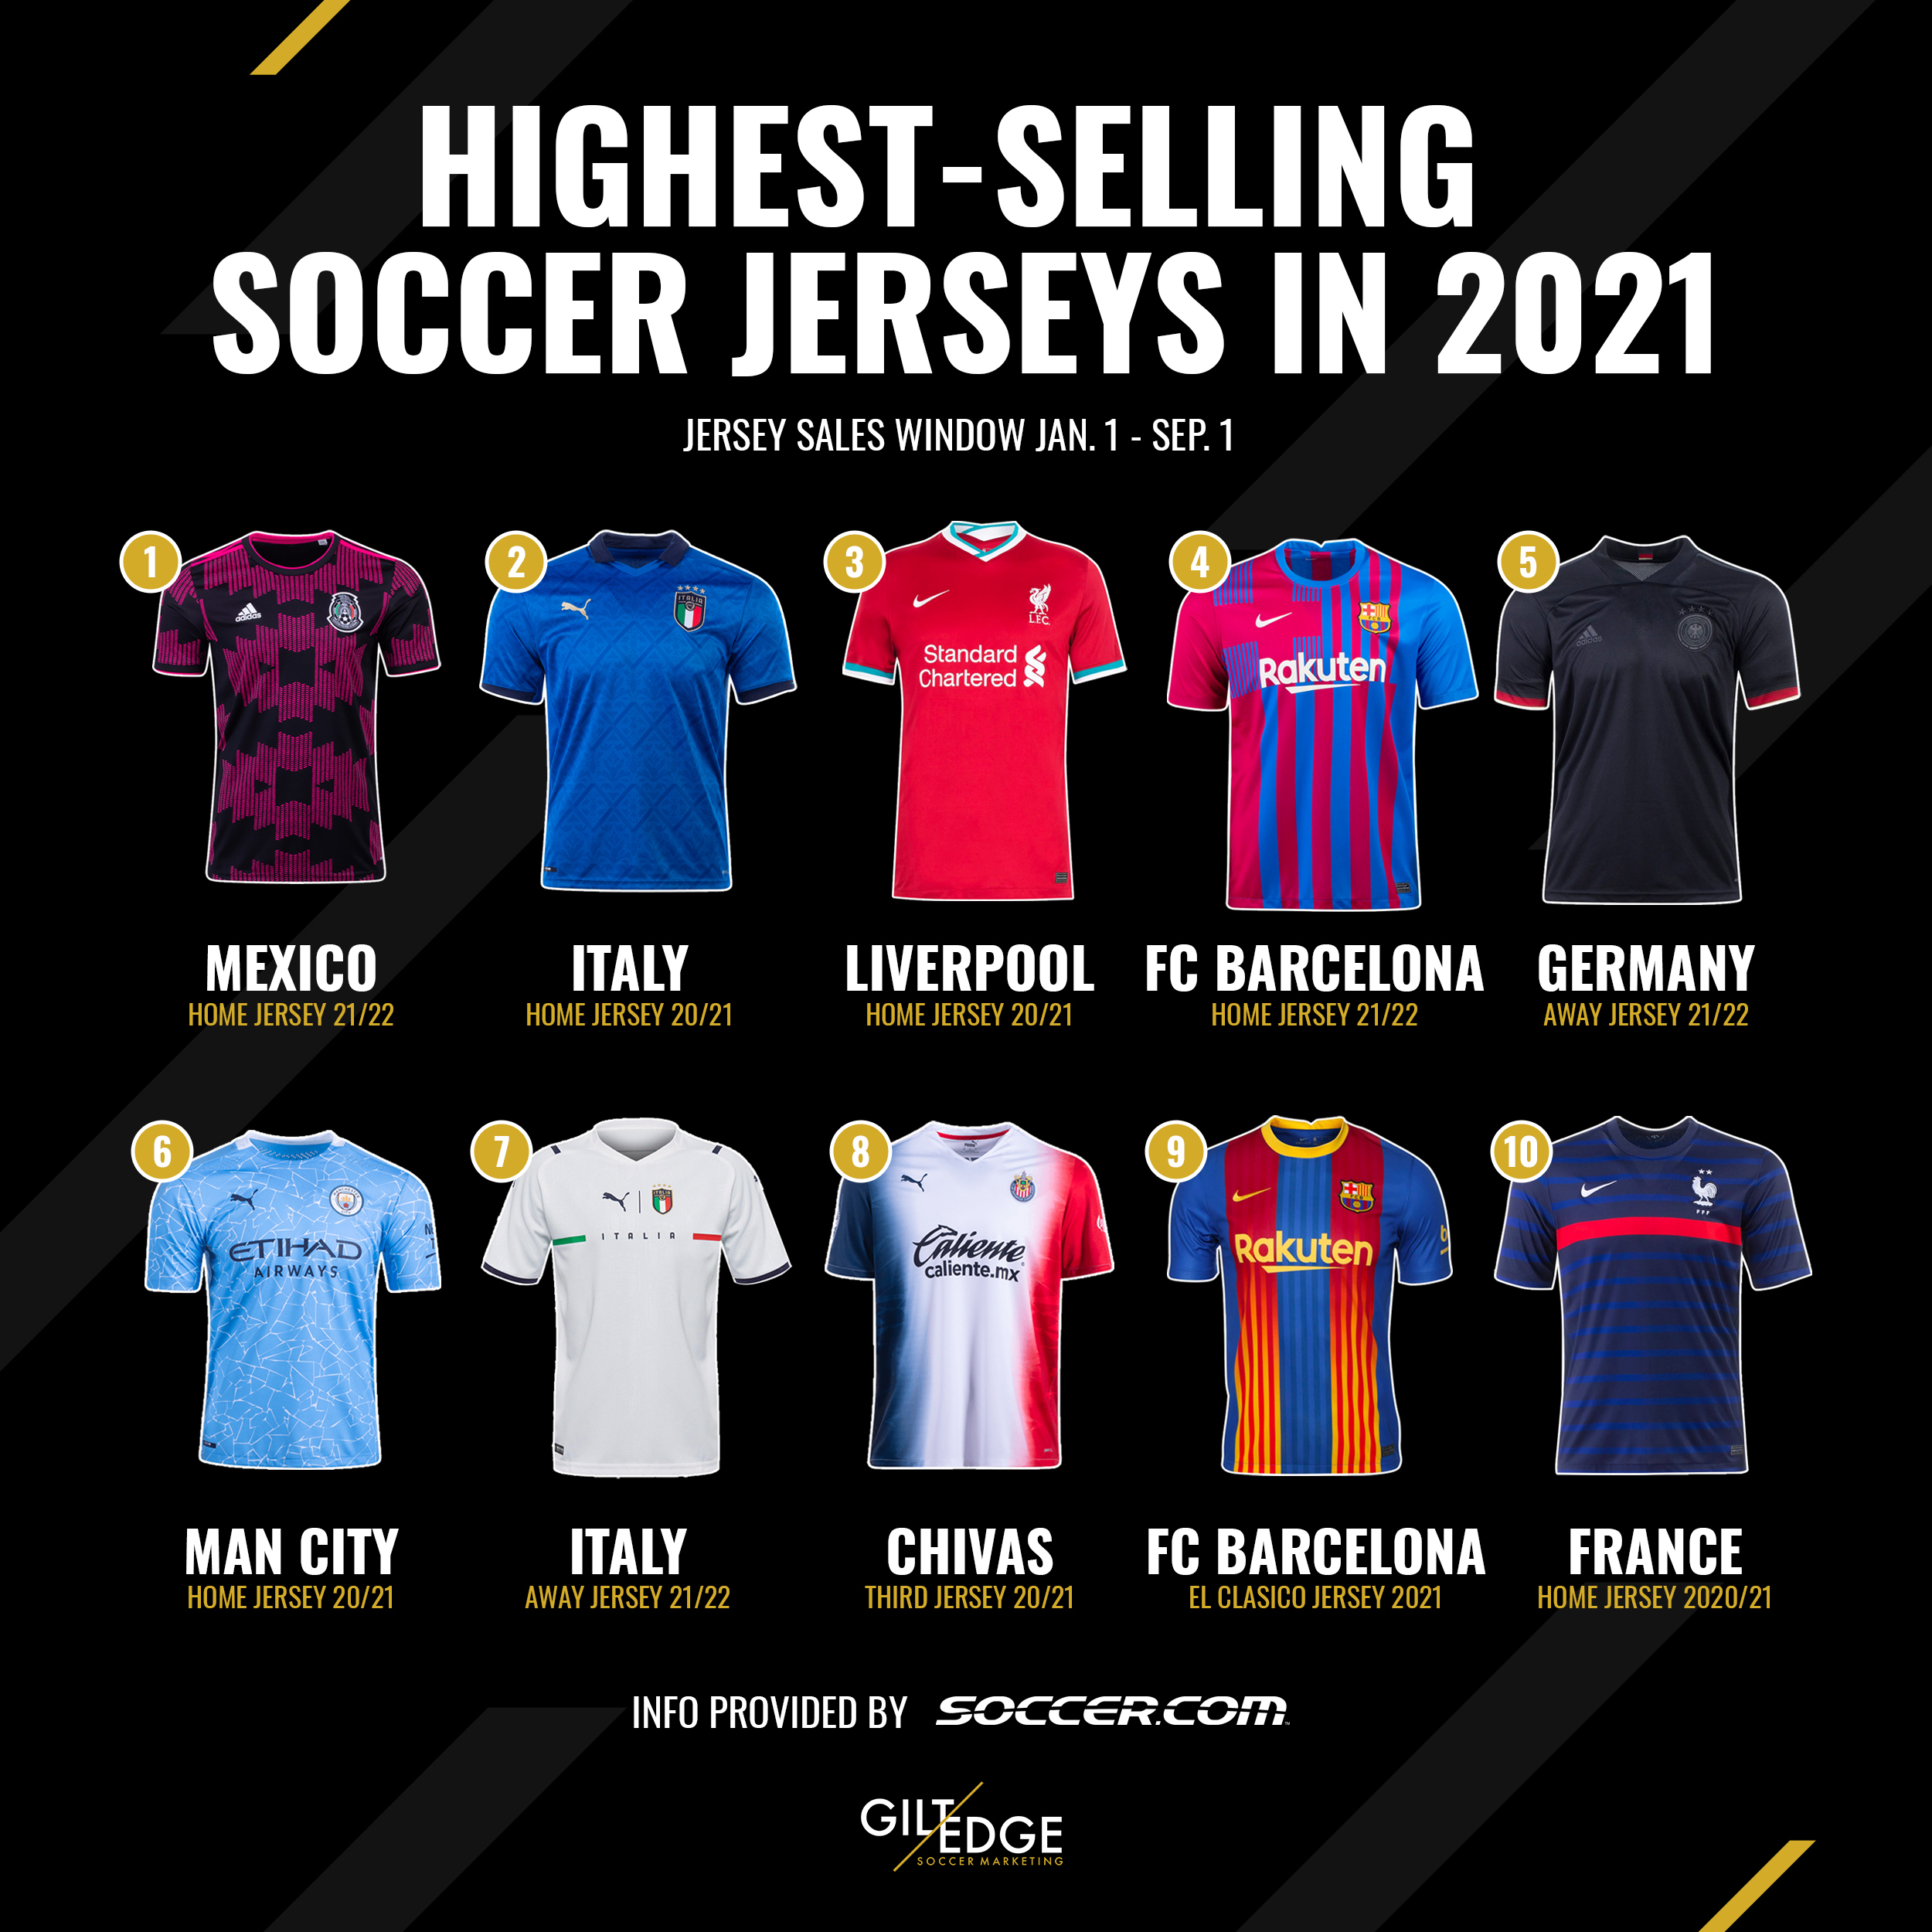 cheap international soccer jerseys